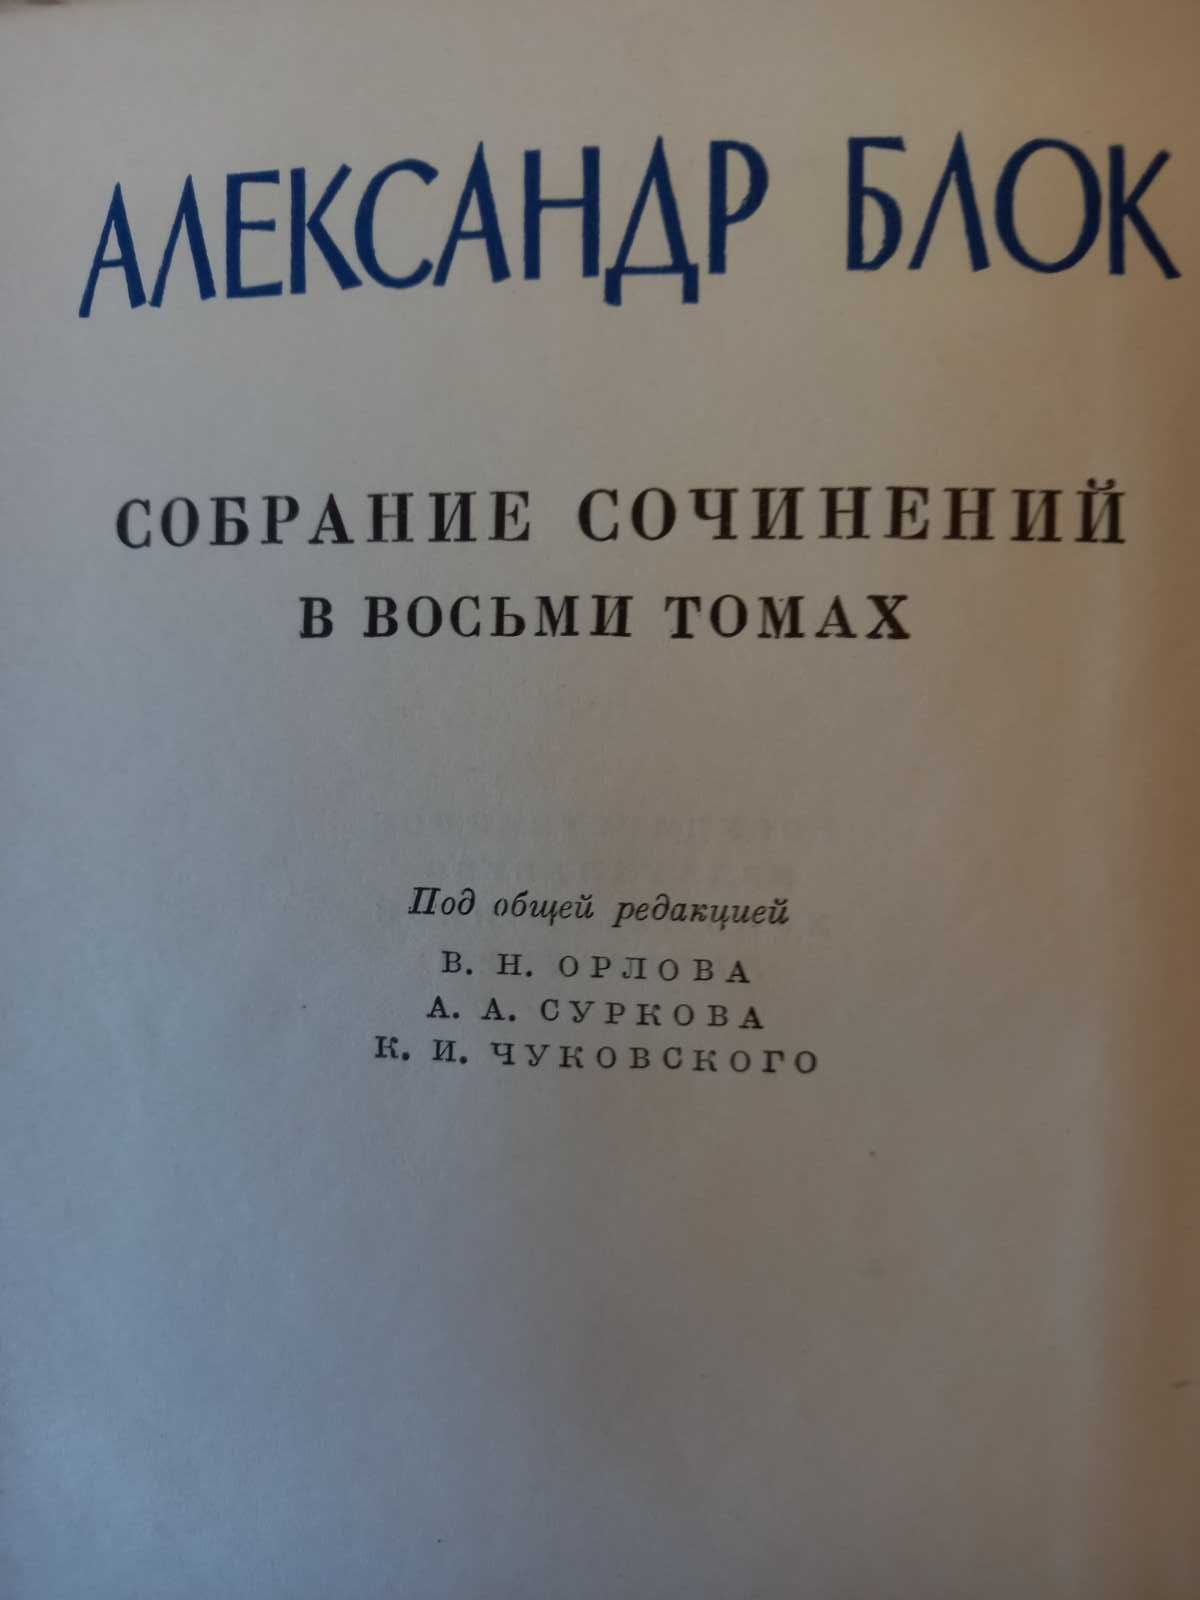 Александр Блок Полное собрание сочинений 8 томов. 1960-63